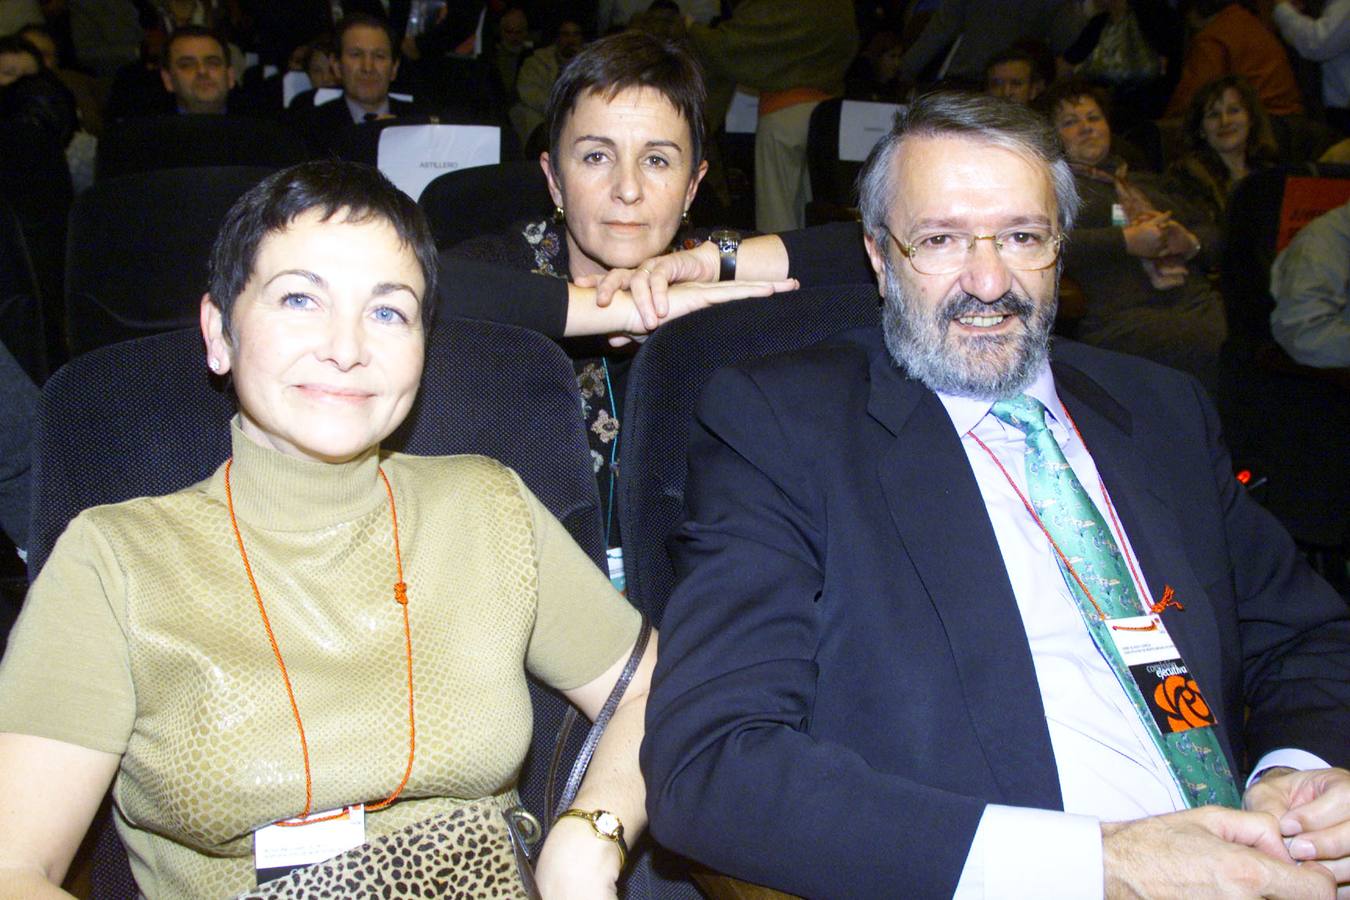 Rosa Inés García se inició en la política a finales de los 70. Su trayectoria siempre ha estado vinculada al PSOE